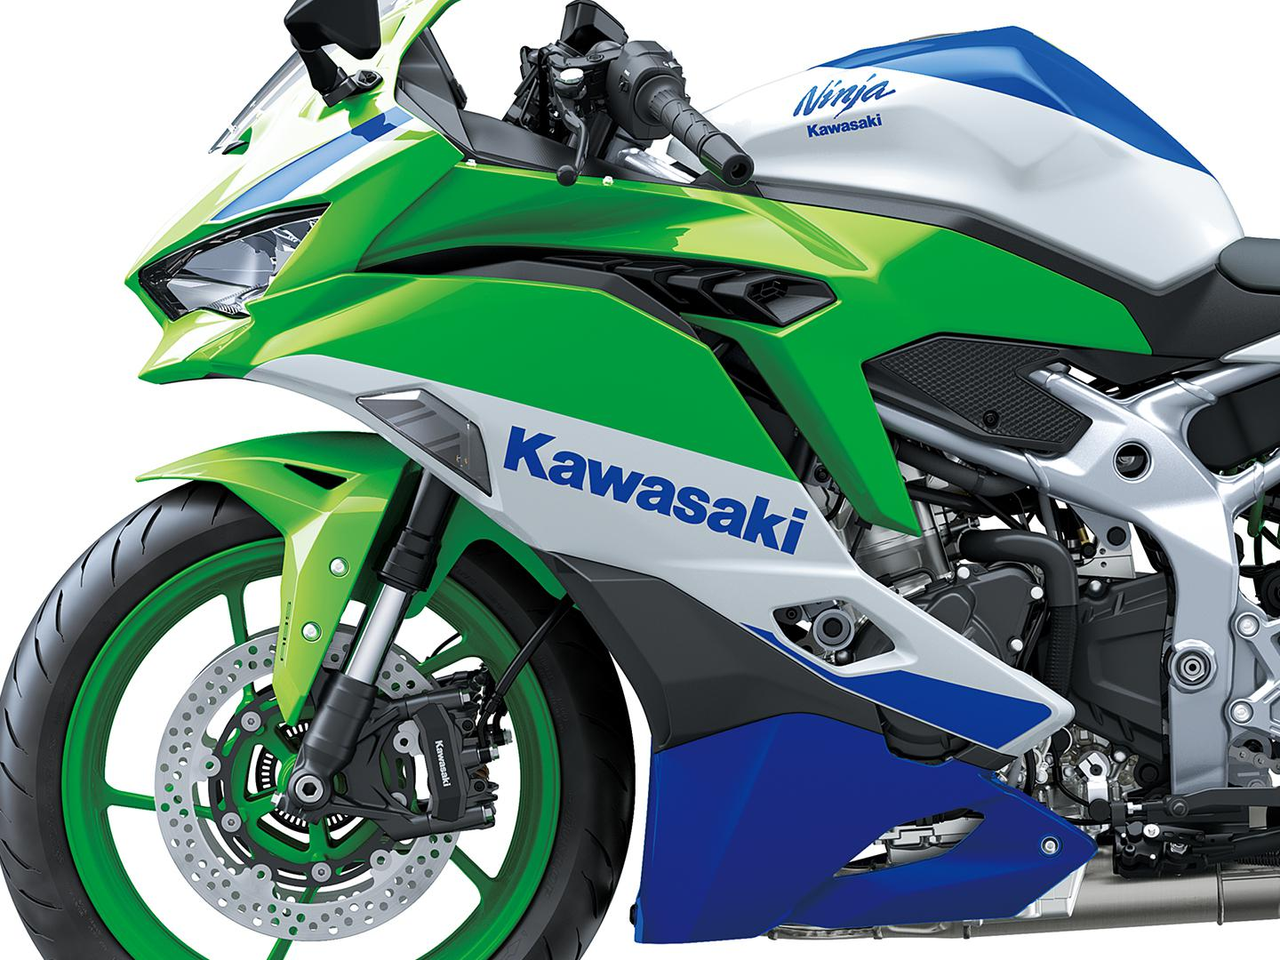 The Kawasaki Side Logo